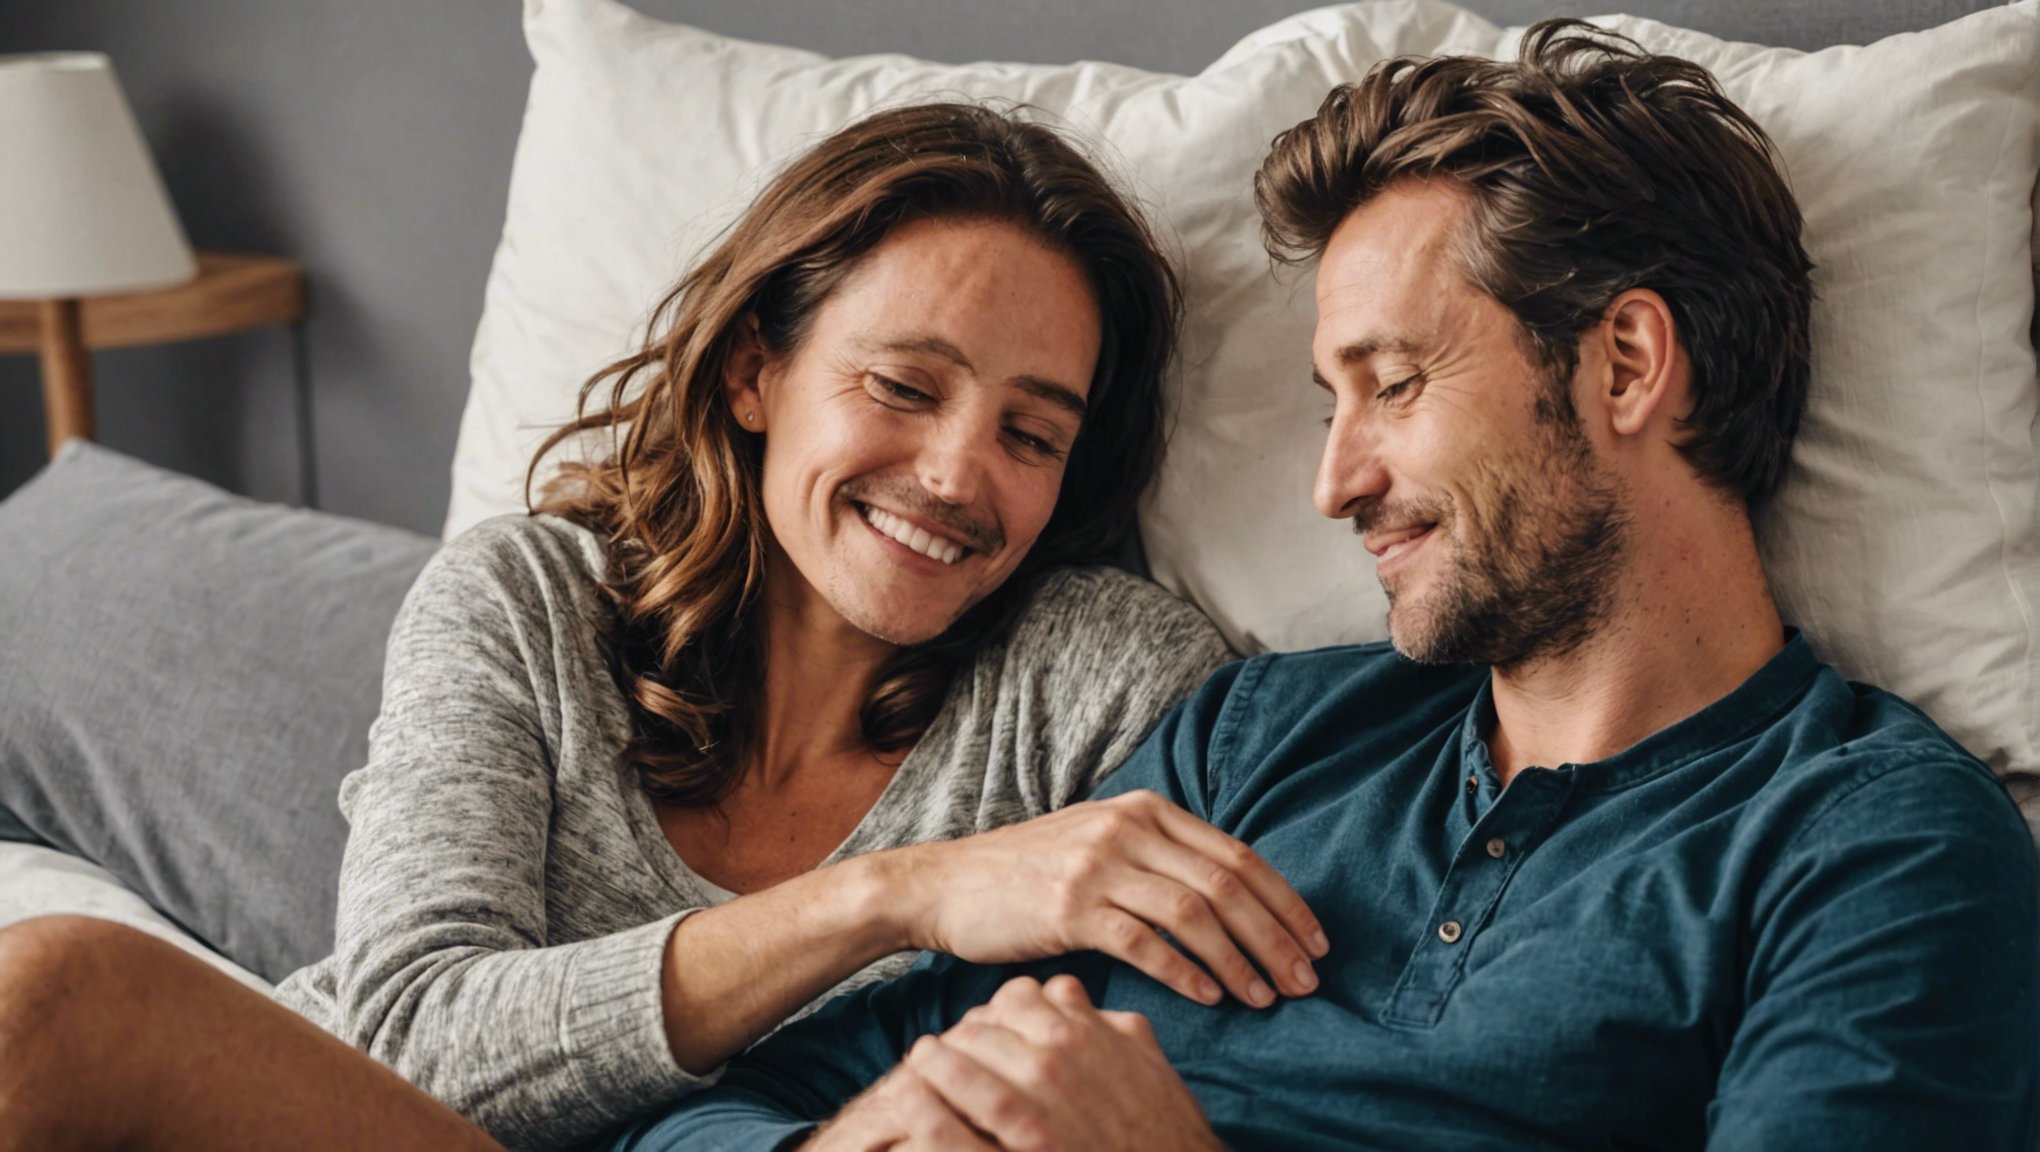 découvrez pourquoi les couples qui partagent le même lit sont plus heureux et comment le sommeil en couple peut renforcer les liens affectifs. retrouvez des conseils pour améliorer la qualité de votre sommeil et renforcer votre relation dans cet article.